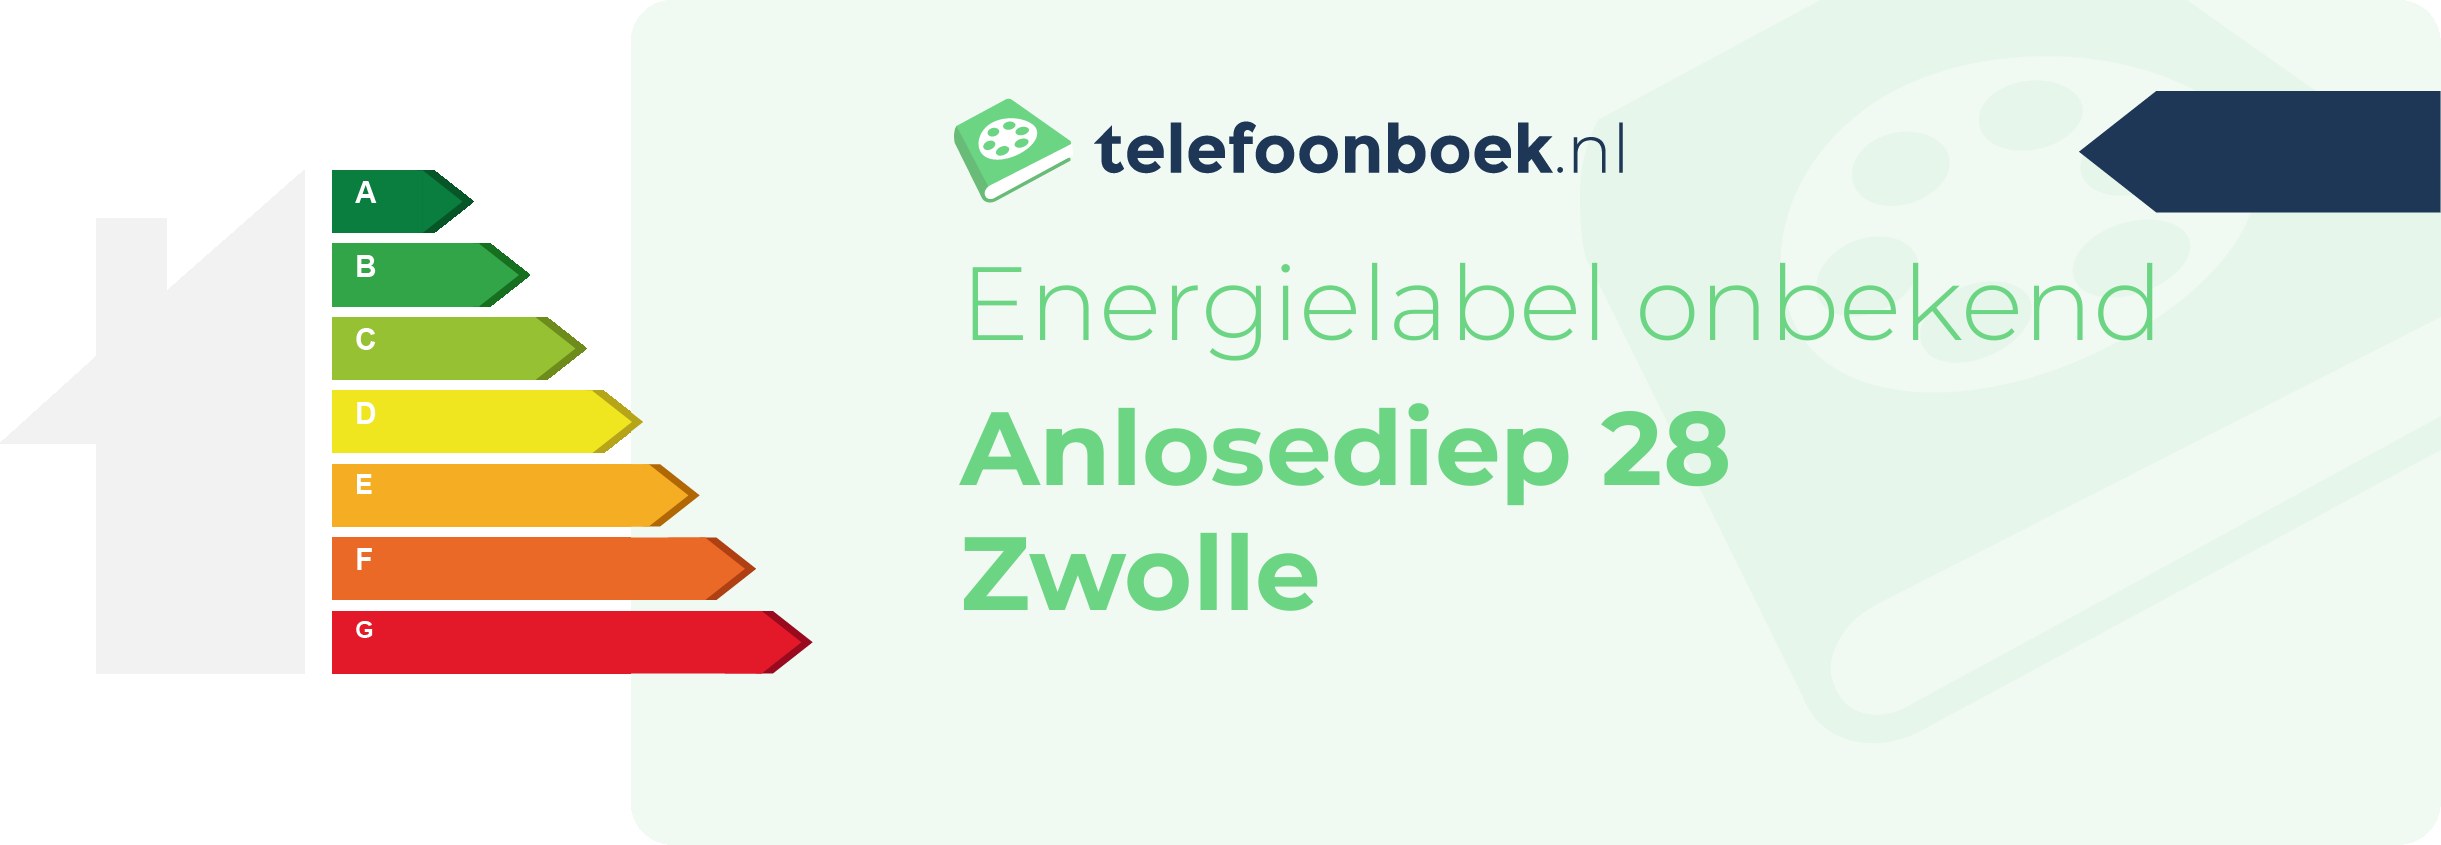 Energielabel Anlosediep 28 Zwolle